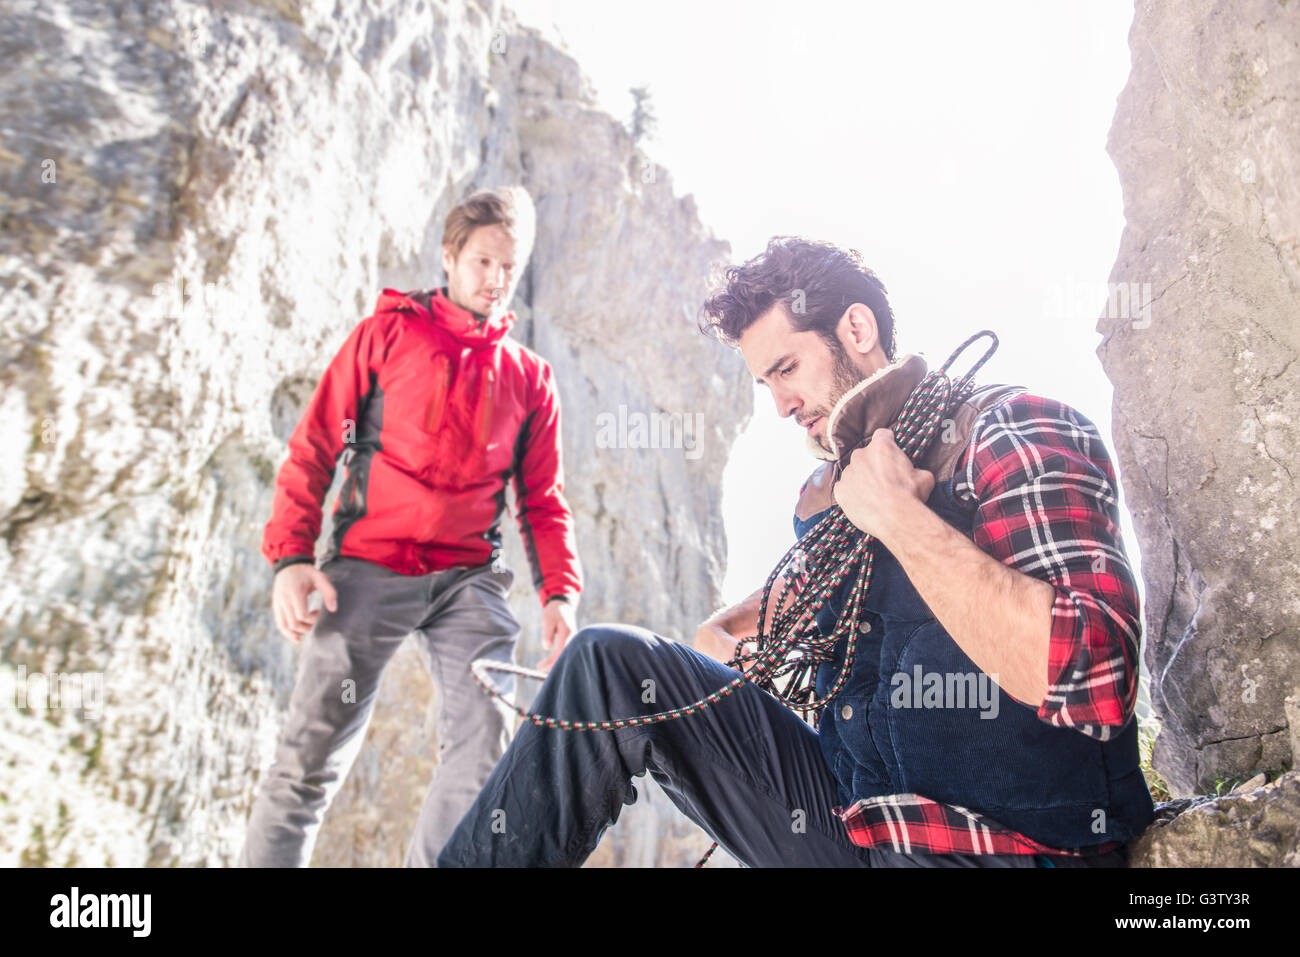 Zwei Bergsteiger ruht während eines Aufstiegs in unwegsamem Gelände. Stockfoto